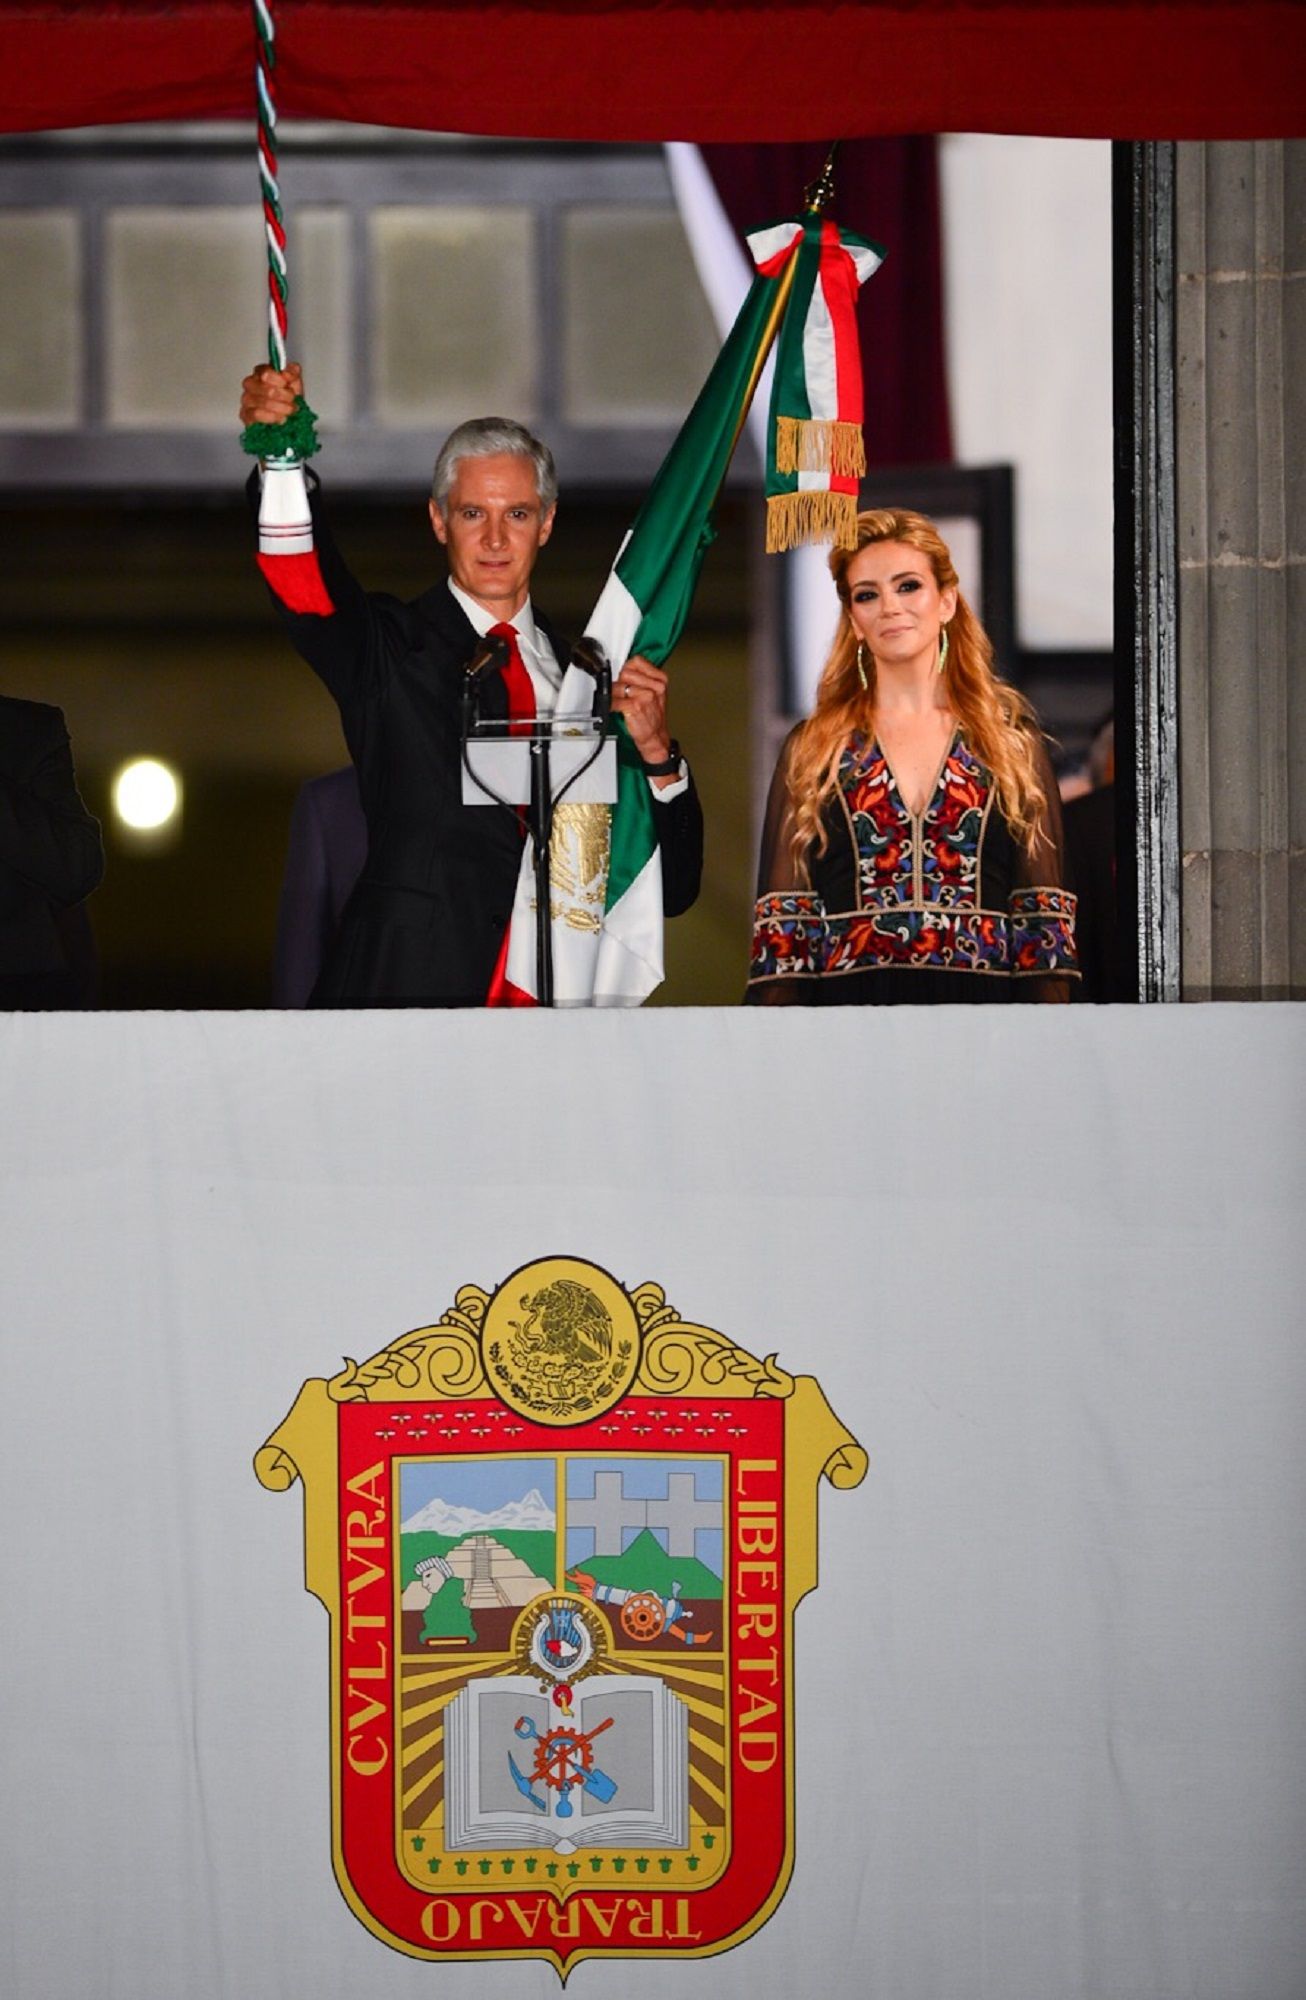  Miles de personas del Estado de México festejan el 209 aniversario de grito de Dolores 